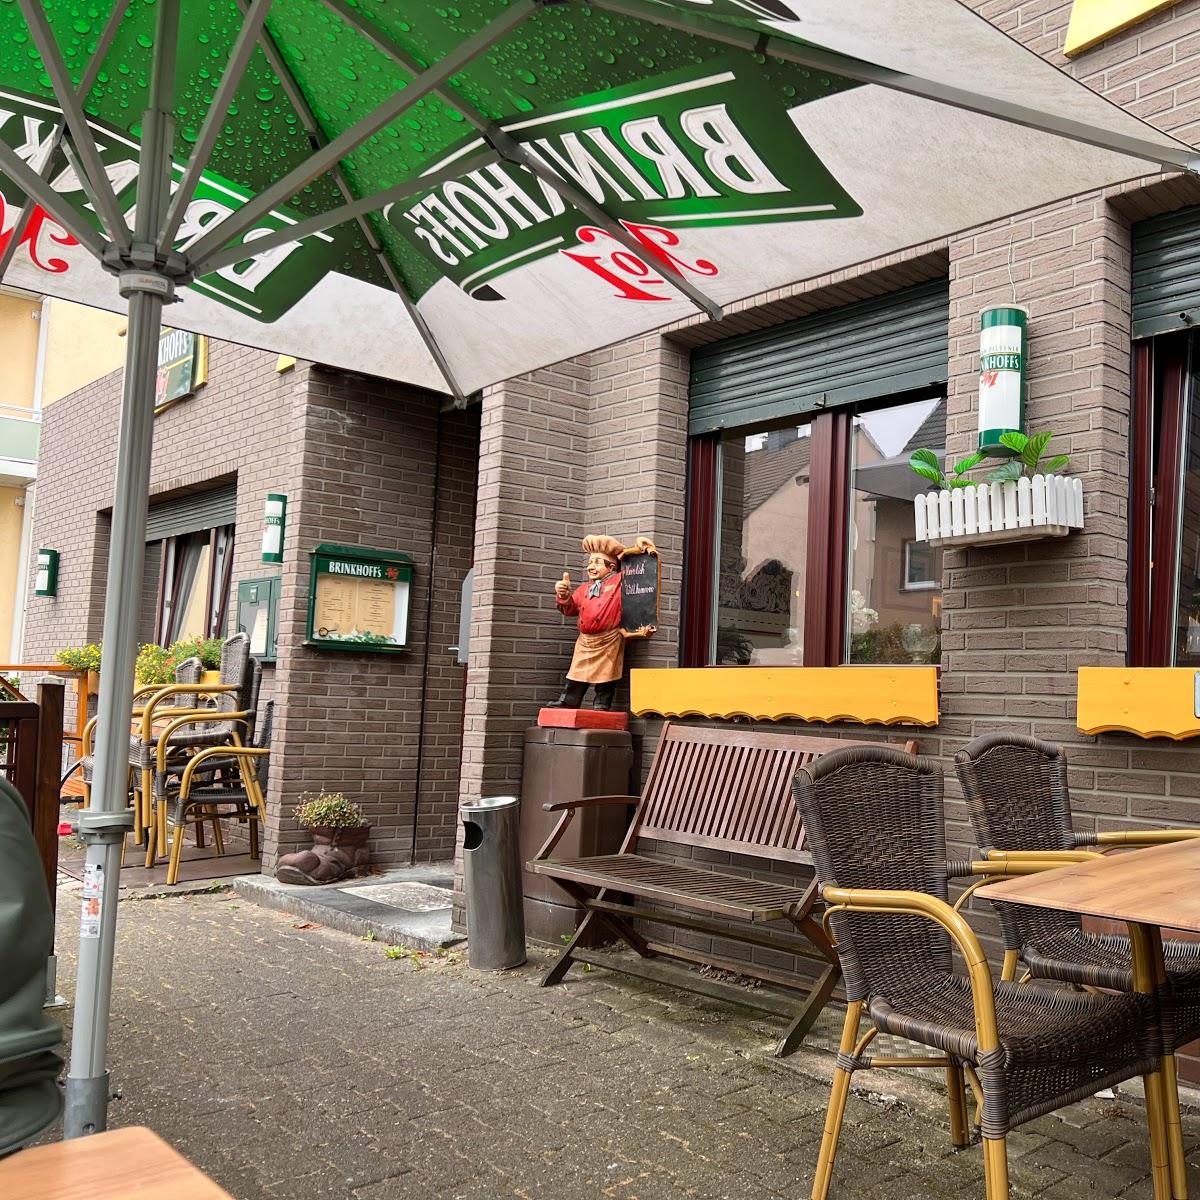 Restaurant "Keglerklause" in Dortmund